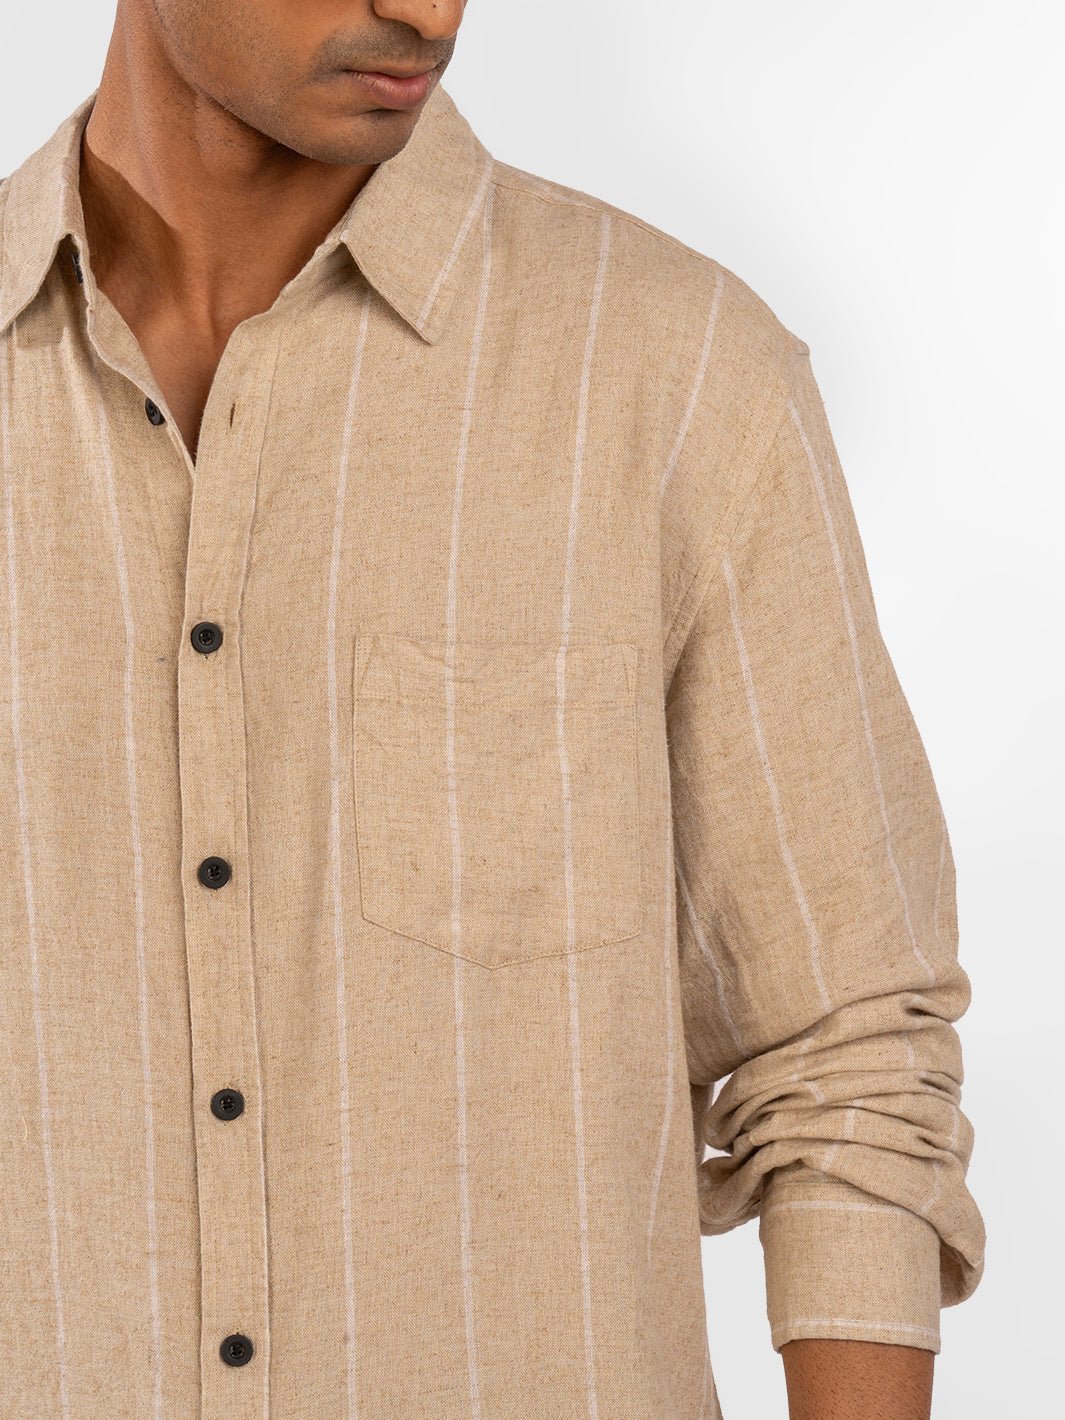 Linen: Cream Stripes Shirt 6